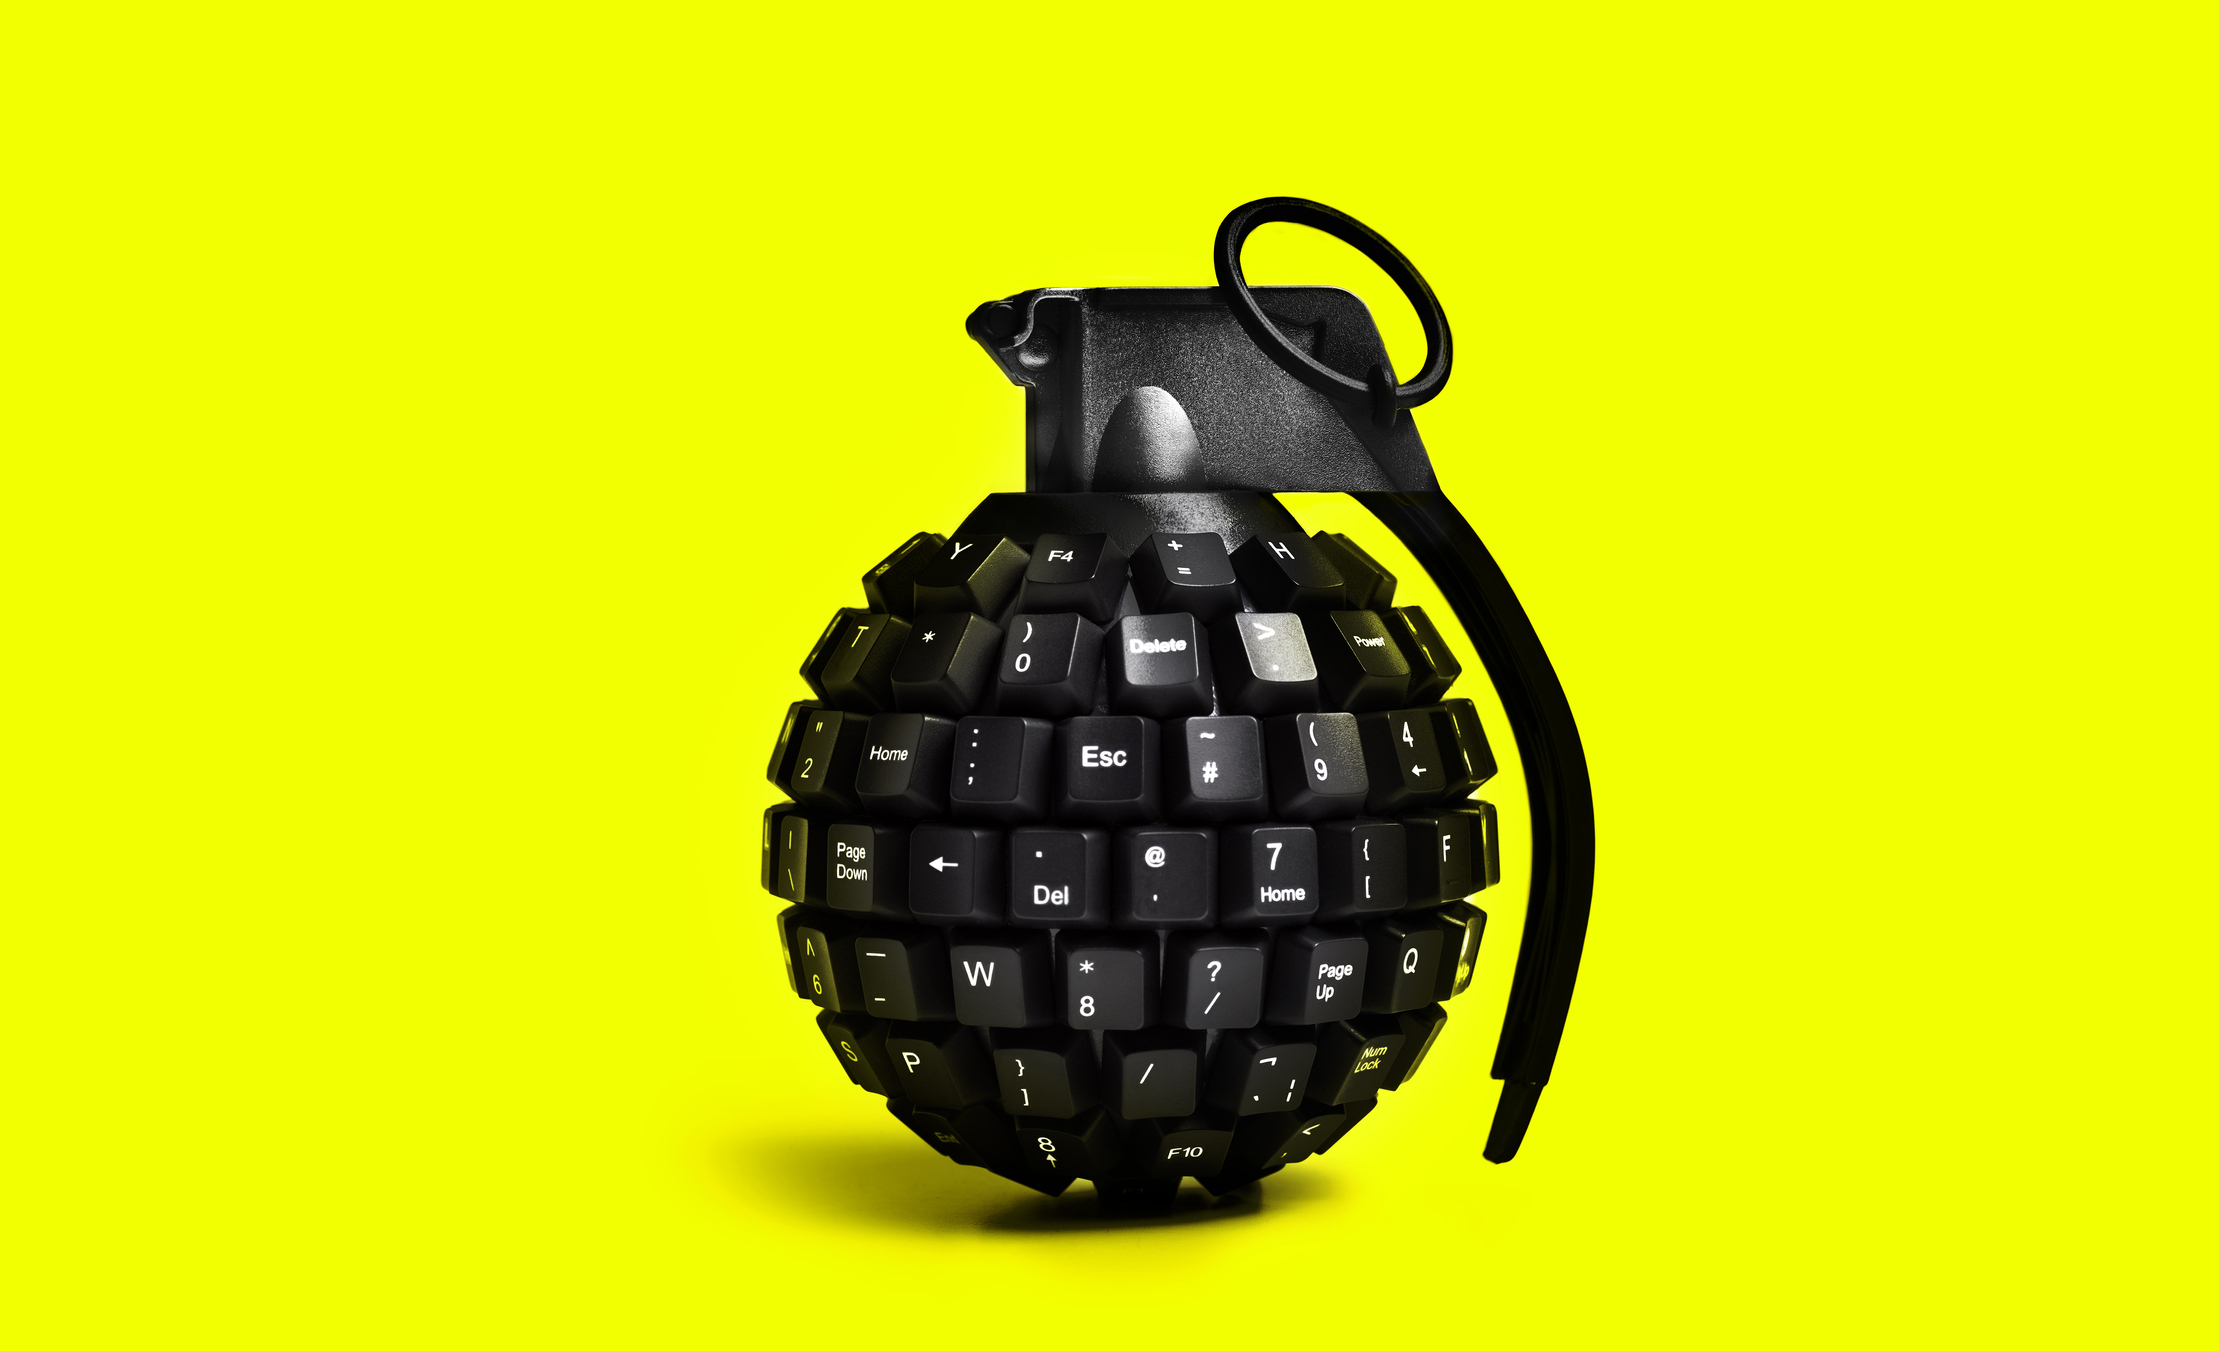 teclado negro en forma de granada frente a un fondo amarillo